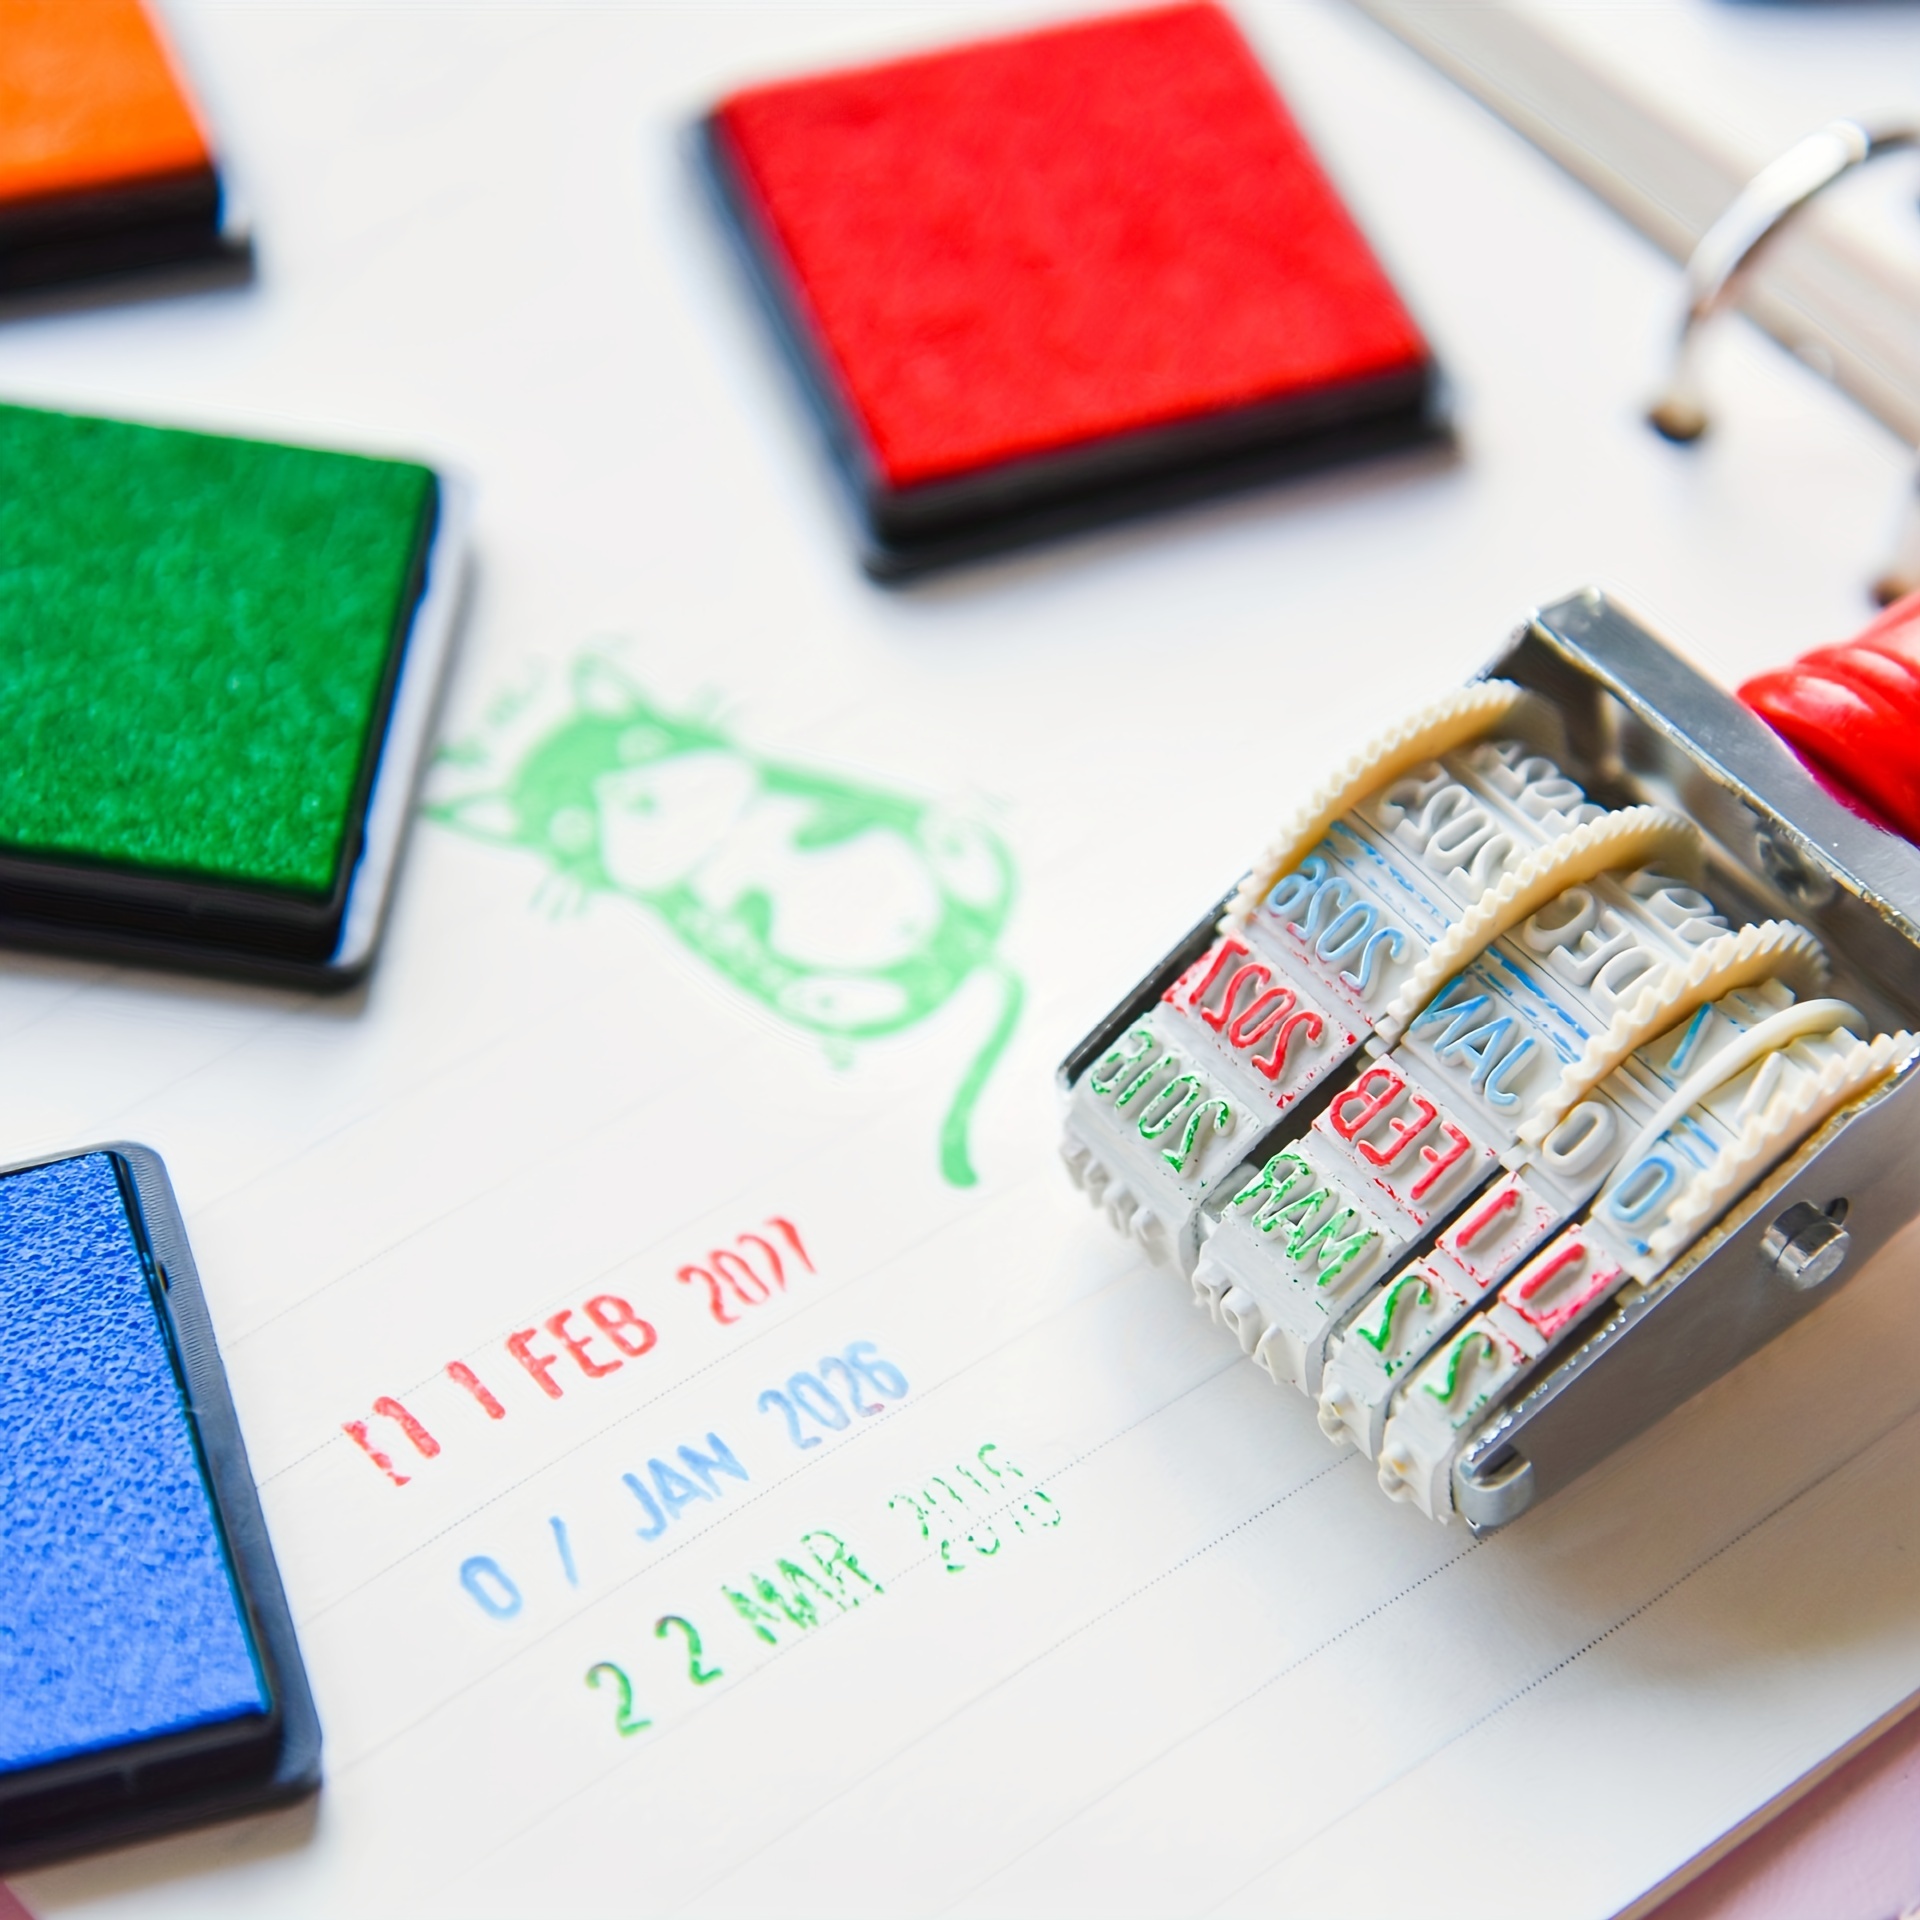 Colorful Ink Pads, 13 Colors Washable Fingerprint Ink Pads, Ink Pads for Kids Washable,Non-Toxic and Child-Safe Ink Stamp Pad for Kids Rubber Stamp